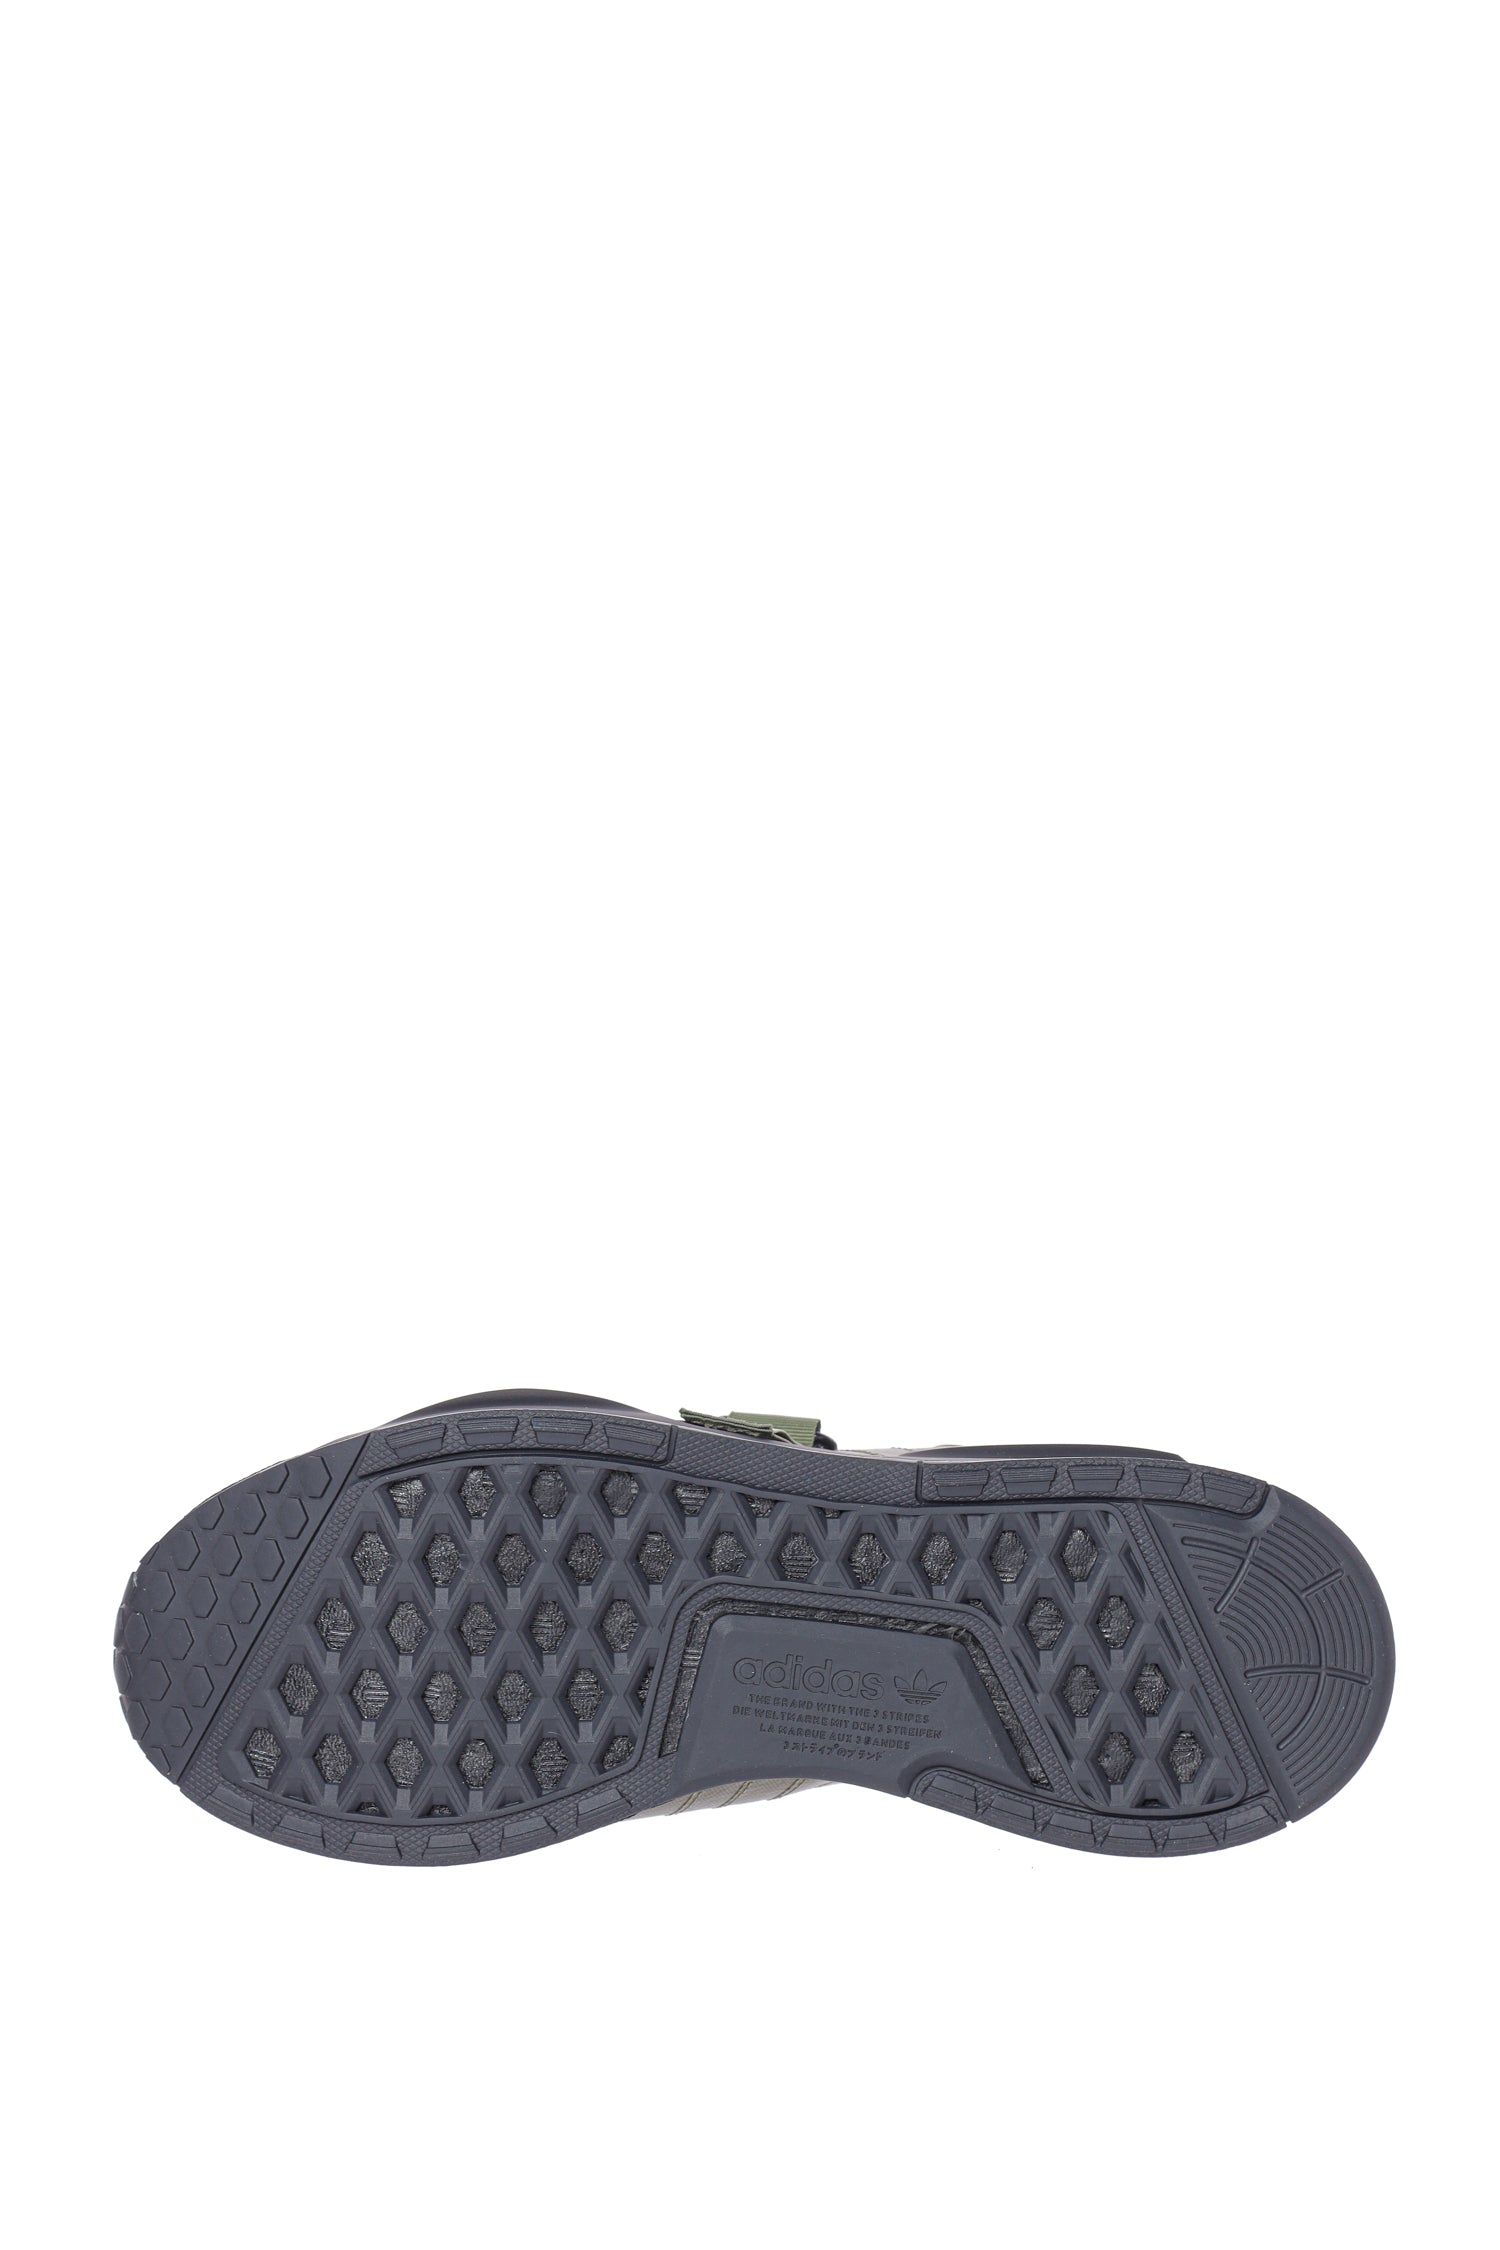 Pantofi sport NMD_V3 GORE-TEX Adidas Originals - talpa